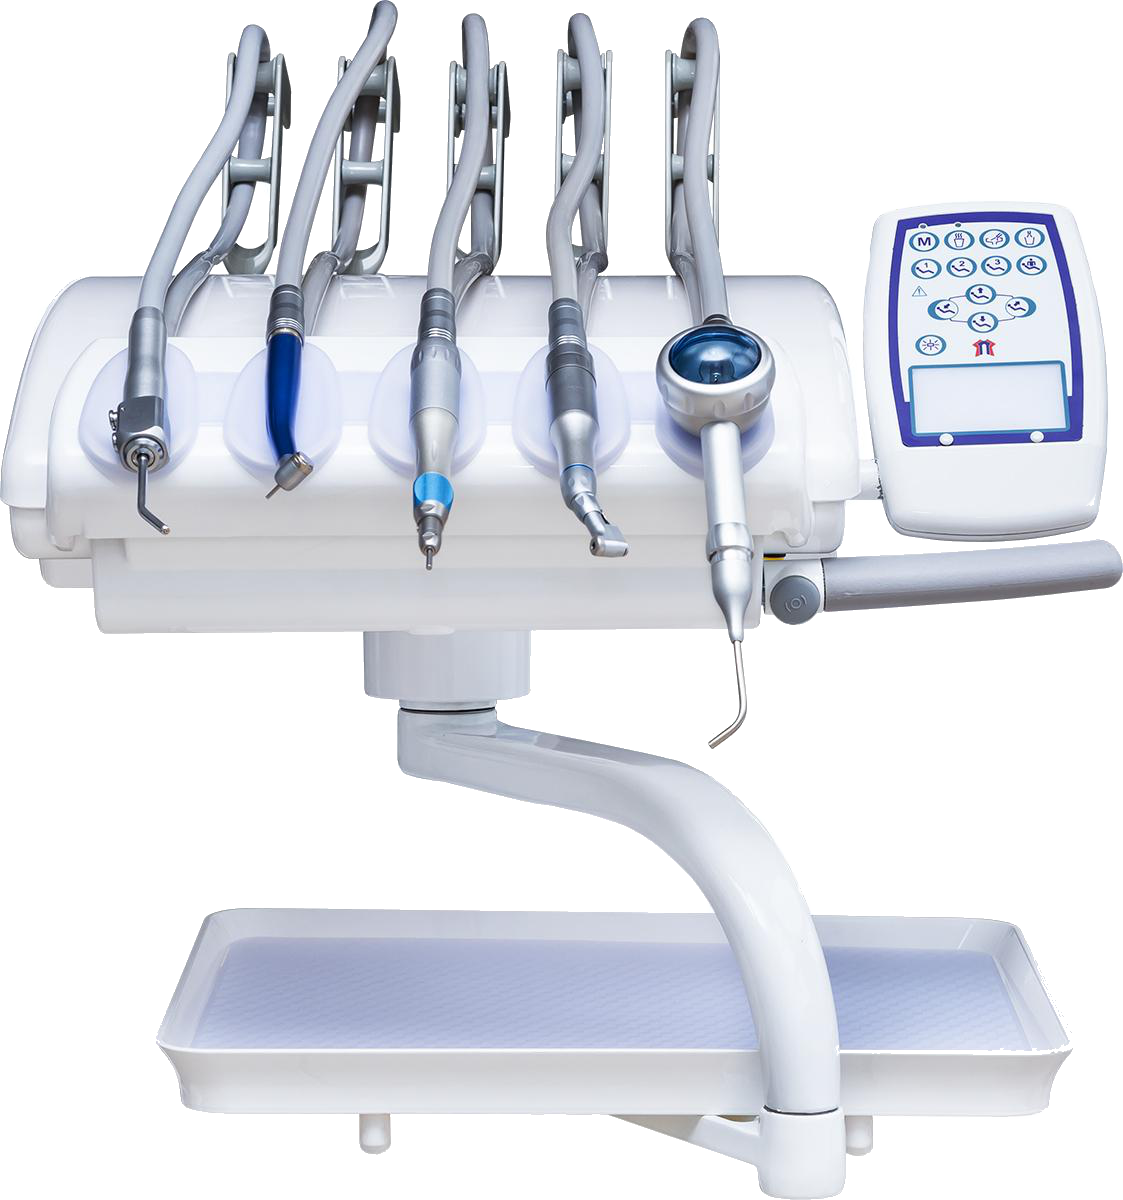 Cefla Dental Group Victor 6015 ADV (AM8015) - стоматологическая установка улучшенной комплектации с нижней:верхней подачей инструментов 3.png